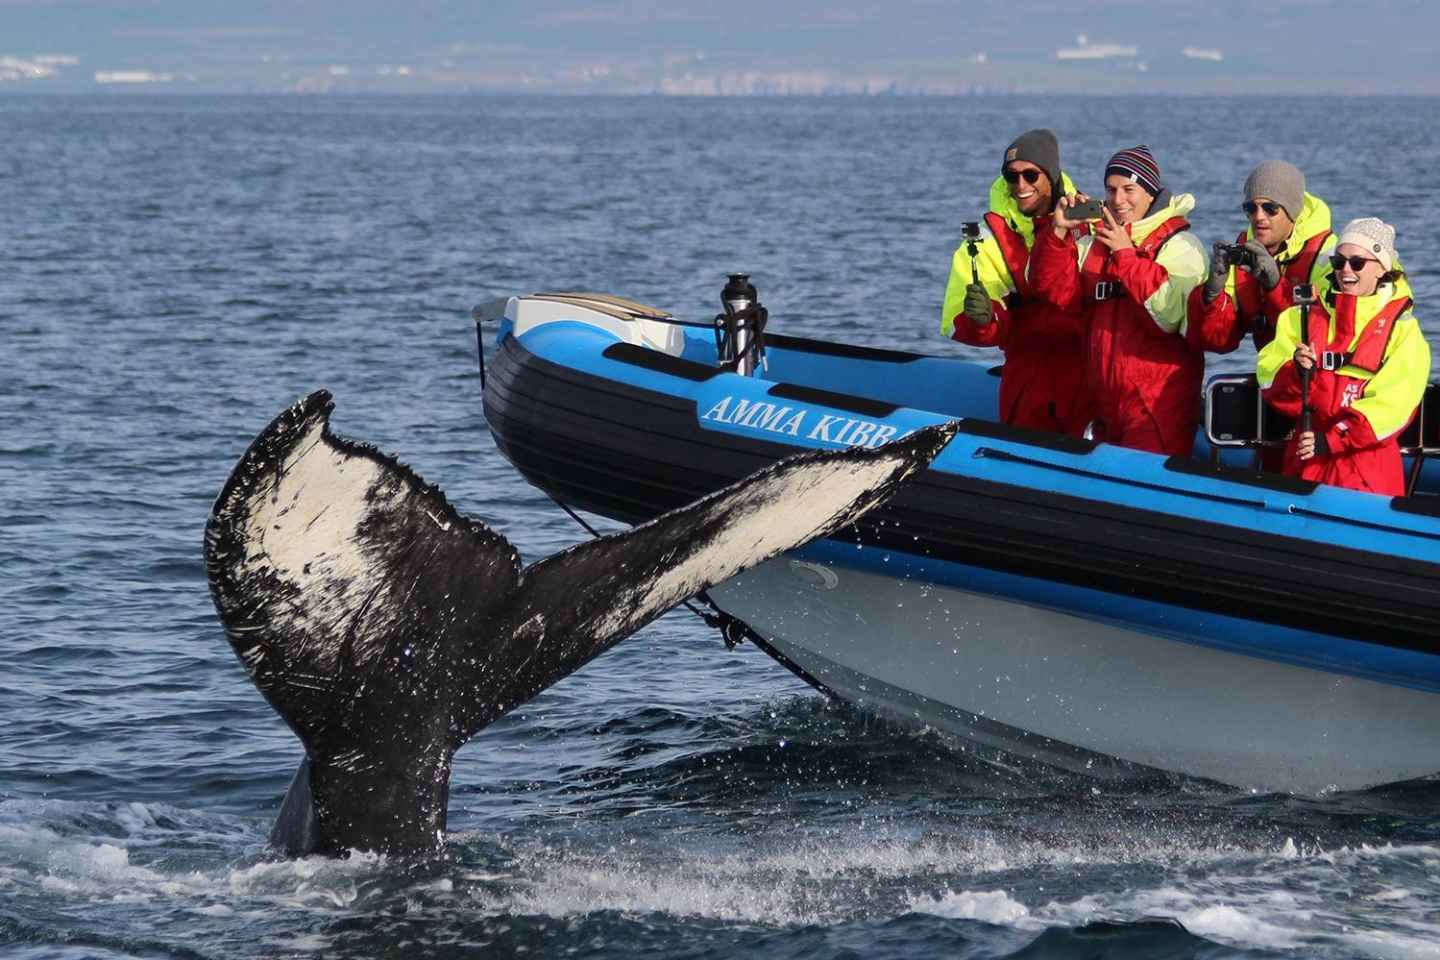 Húsavík: Big Whale Safari & Puffin Island Tour